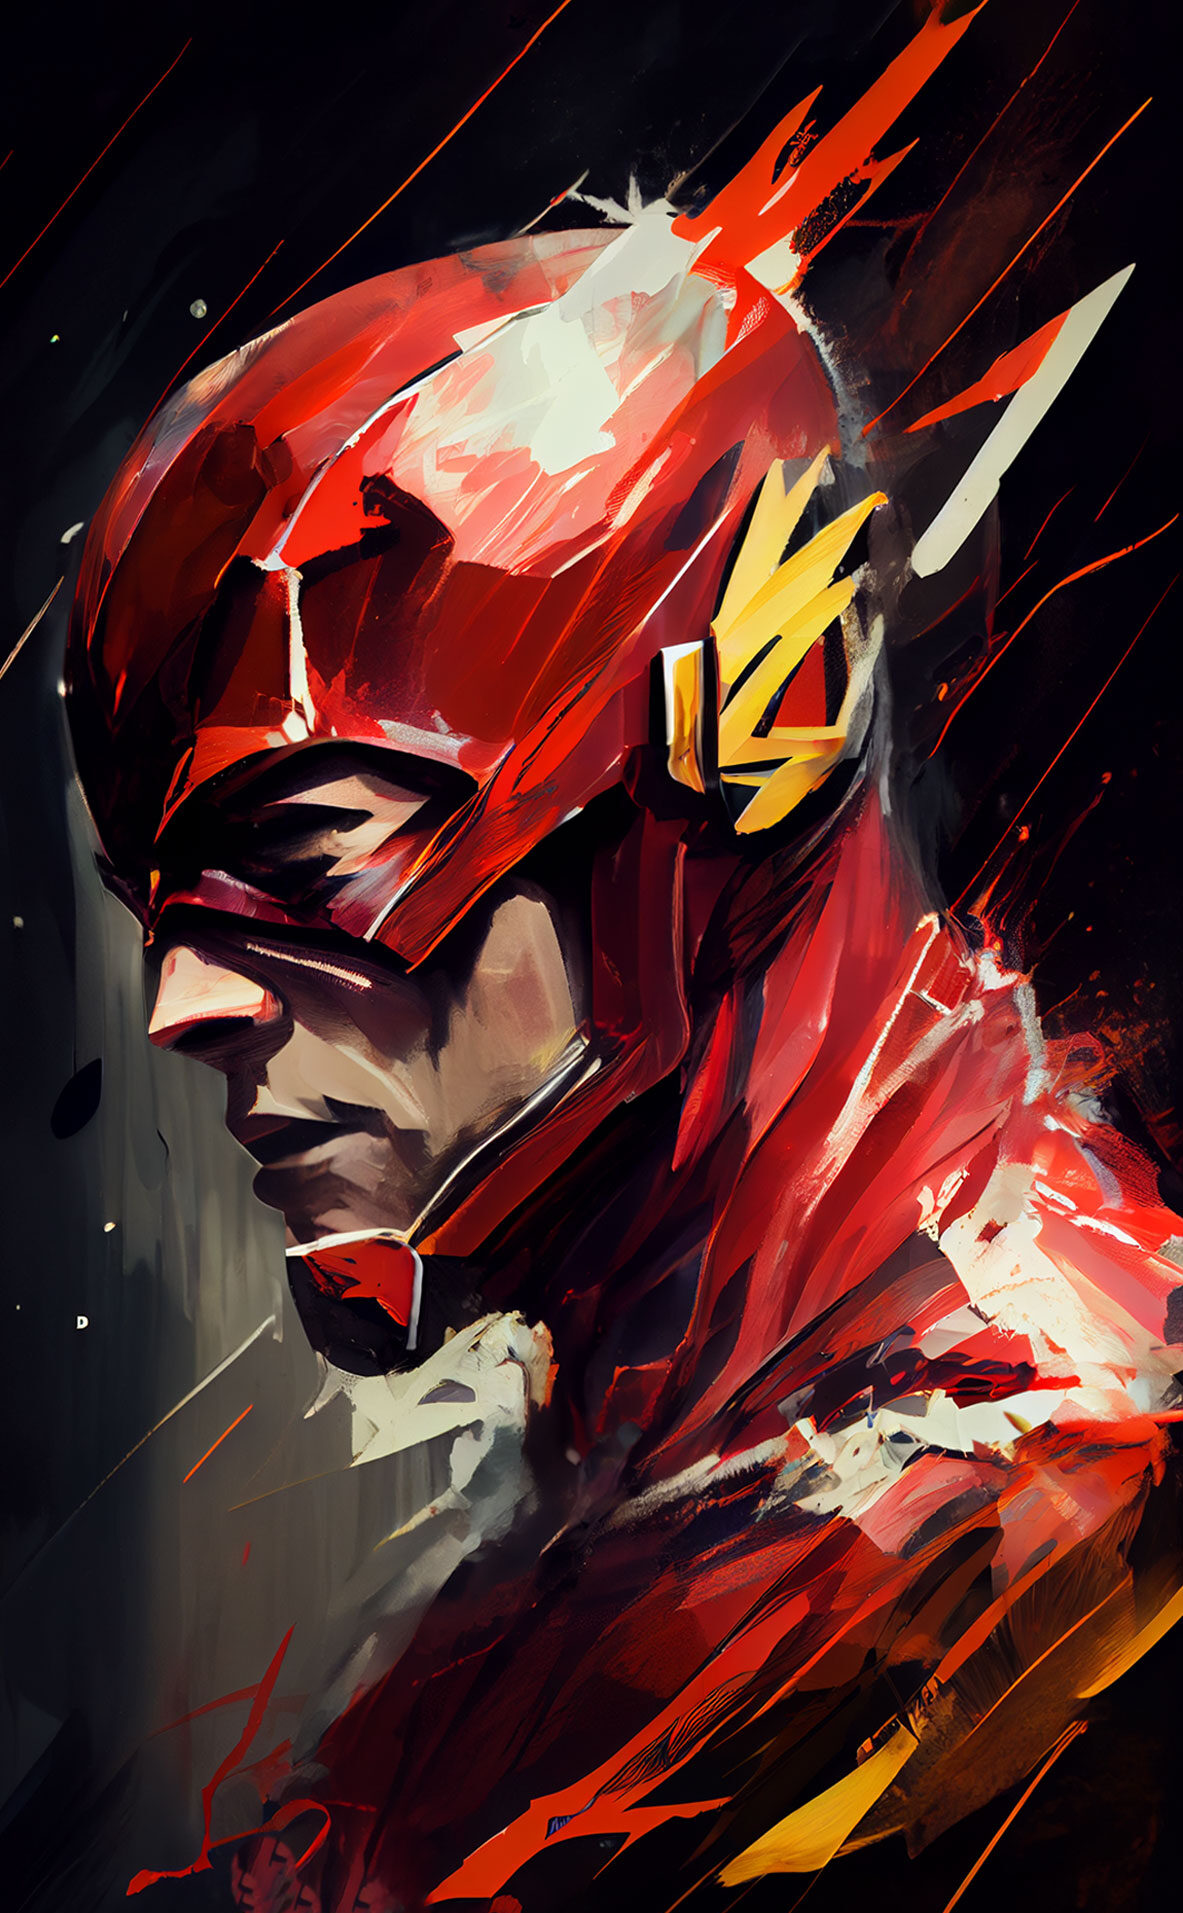 I volumi essenziali per conoscere The Flash